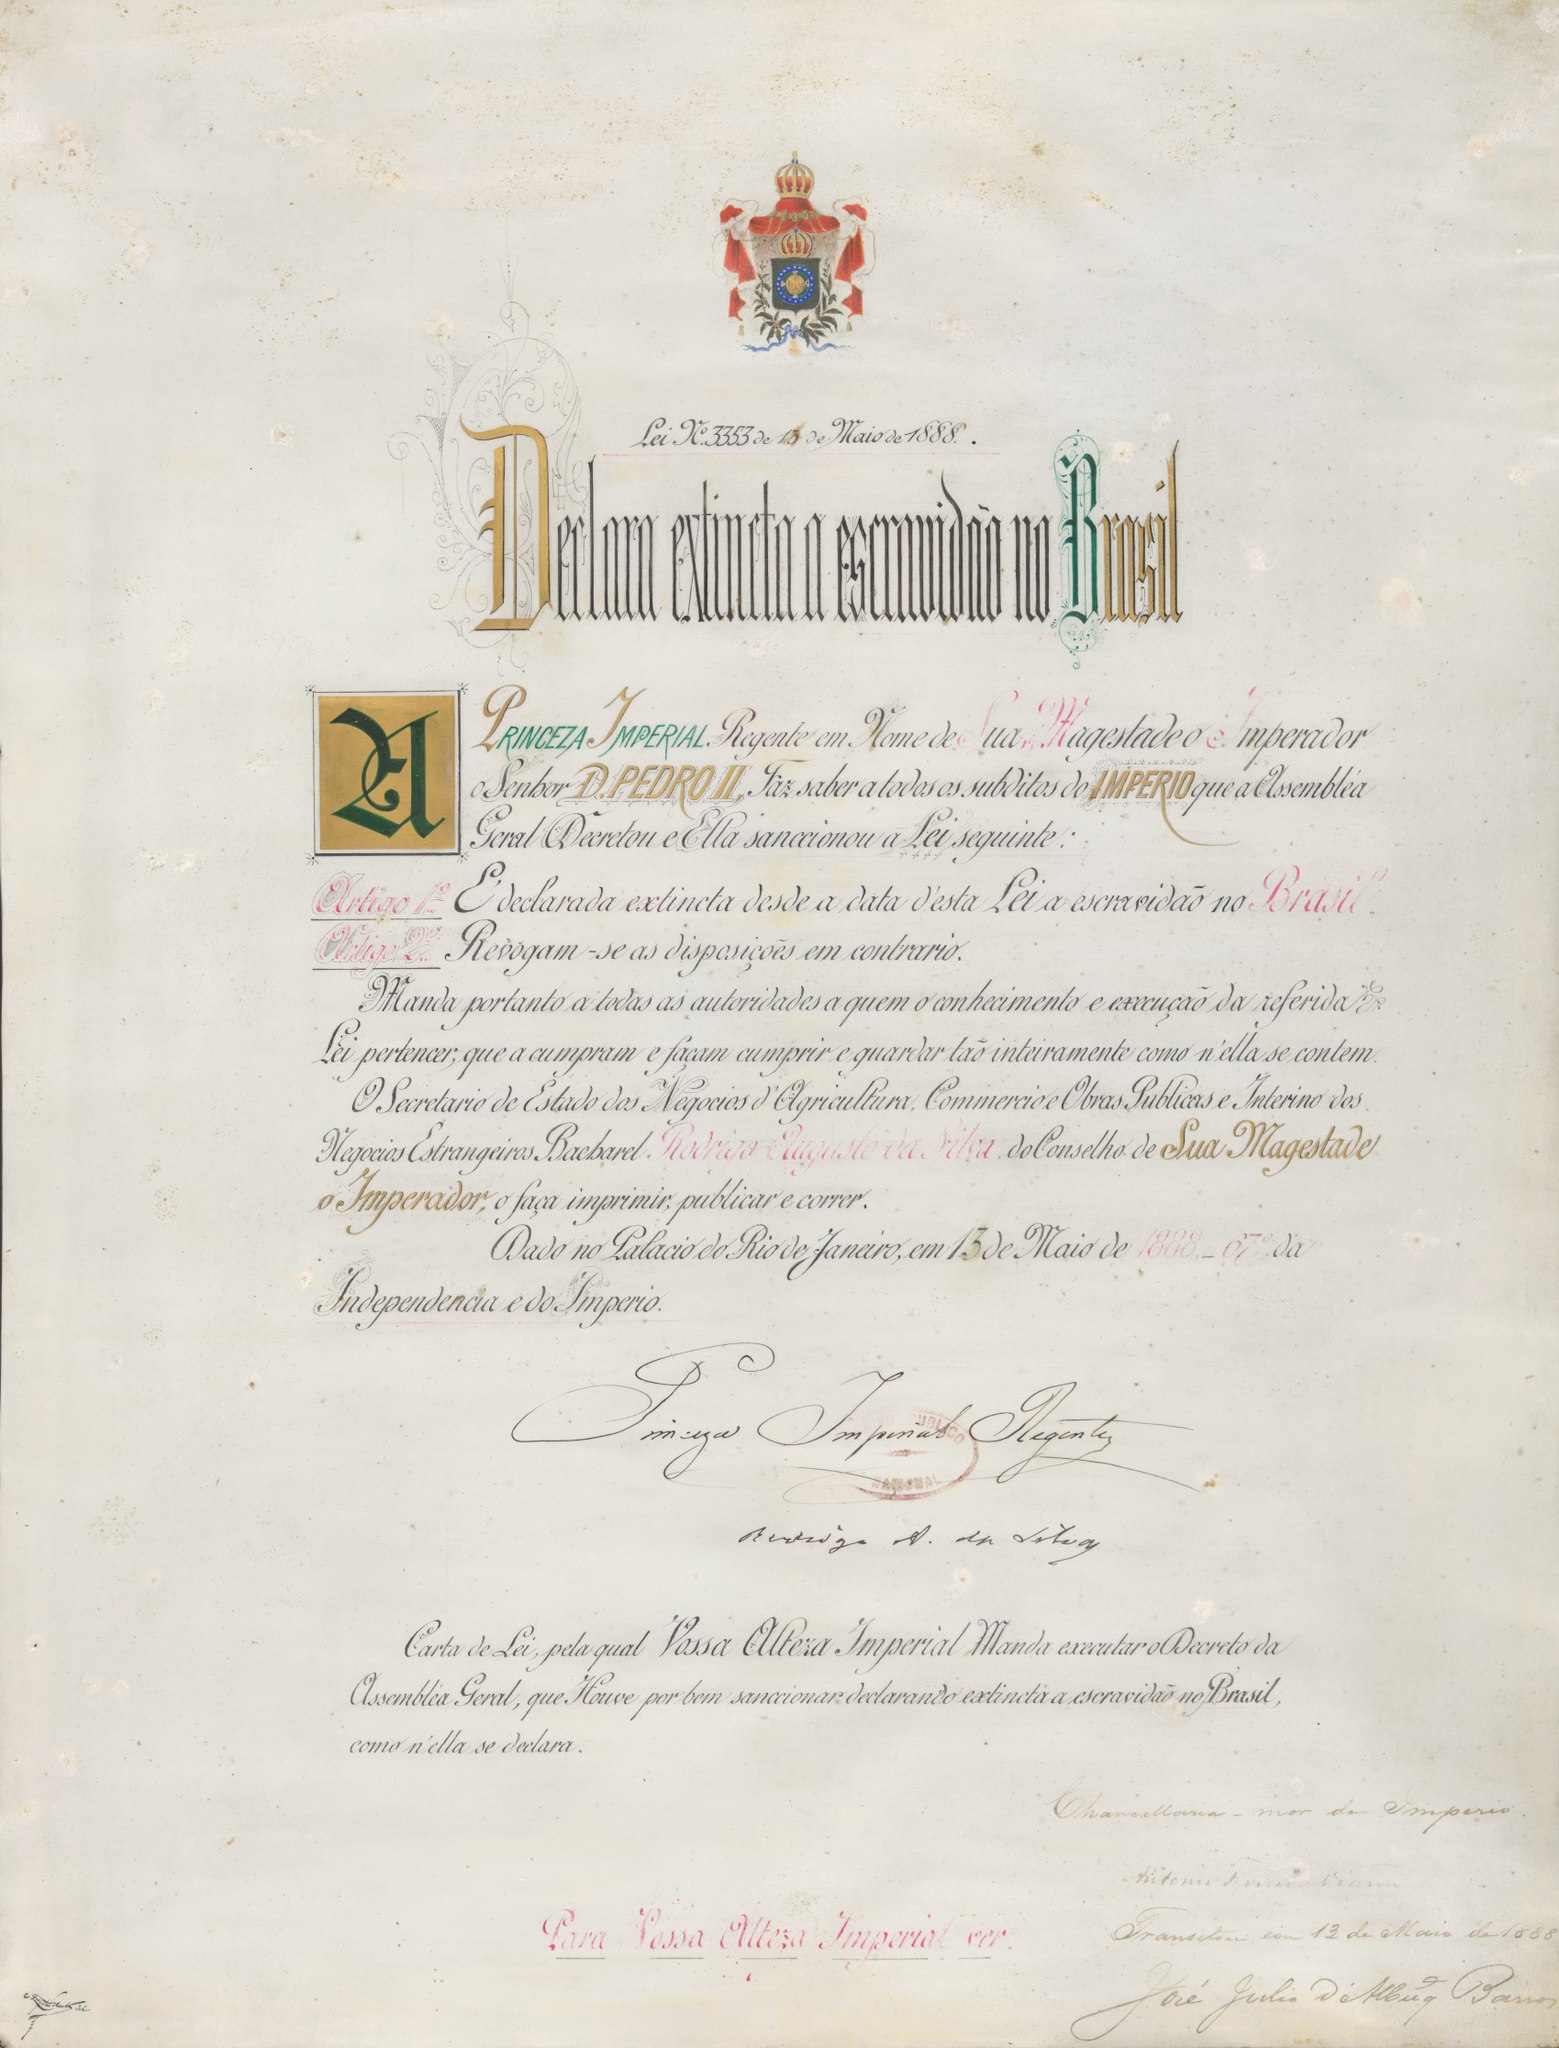 Imagem que mostra a Lei Áurea, que determinava a abolição da escravatura, em 1888